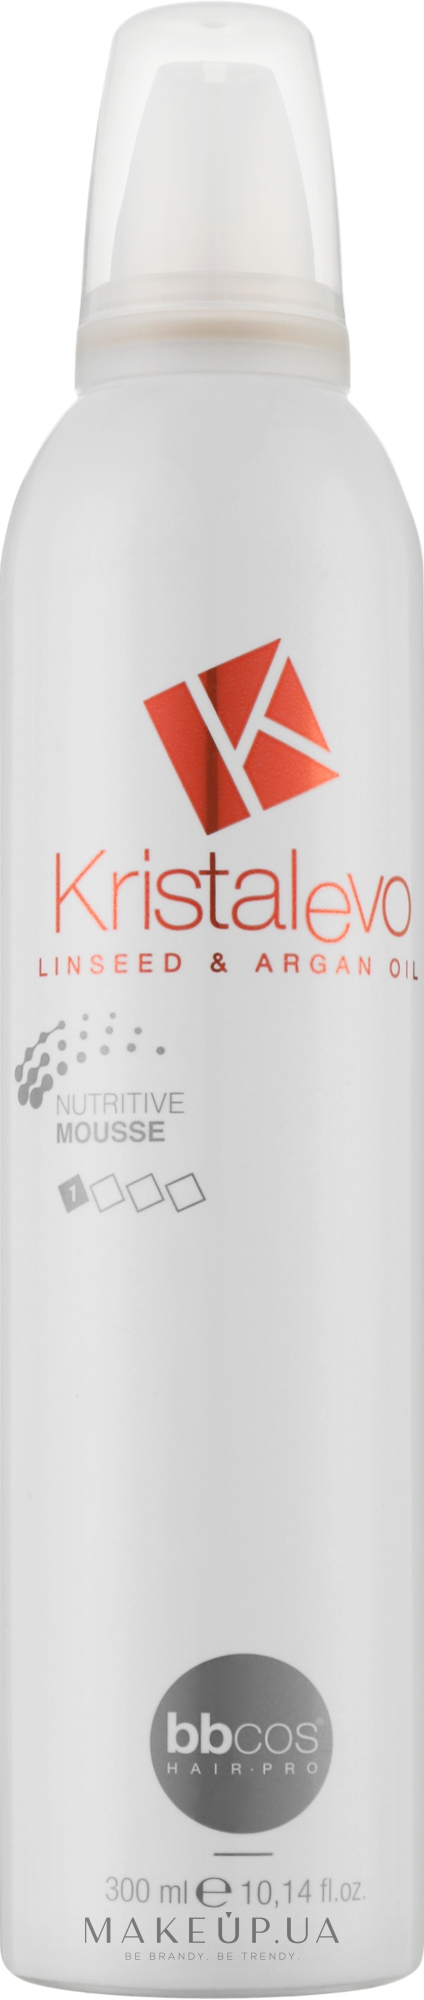 Мусс для волос питательный - Bbcos Kristal Evo Nutritive Hair Mousse — фото 300ml